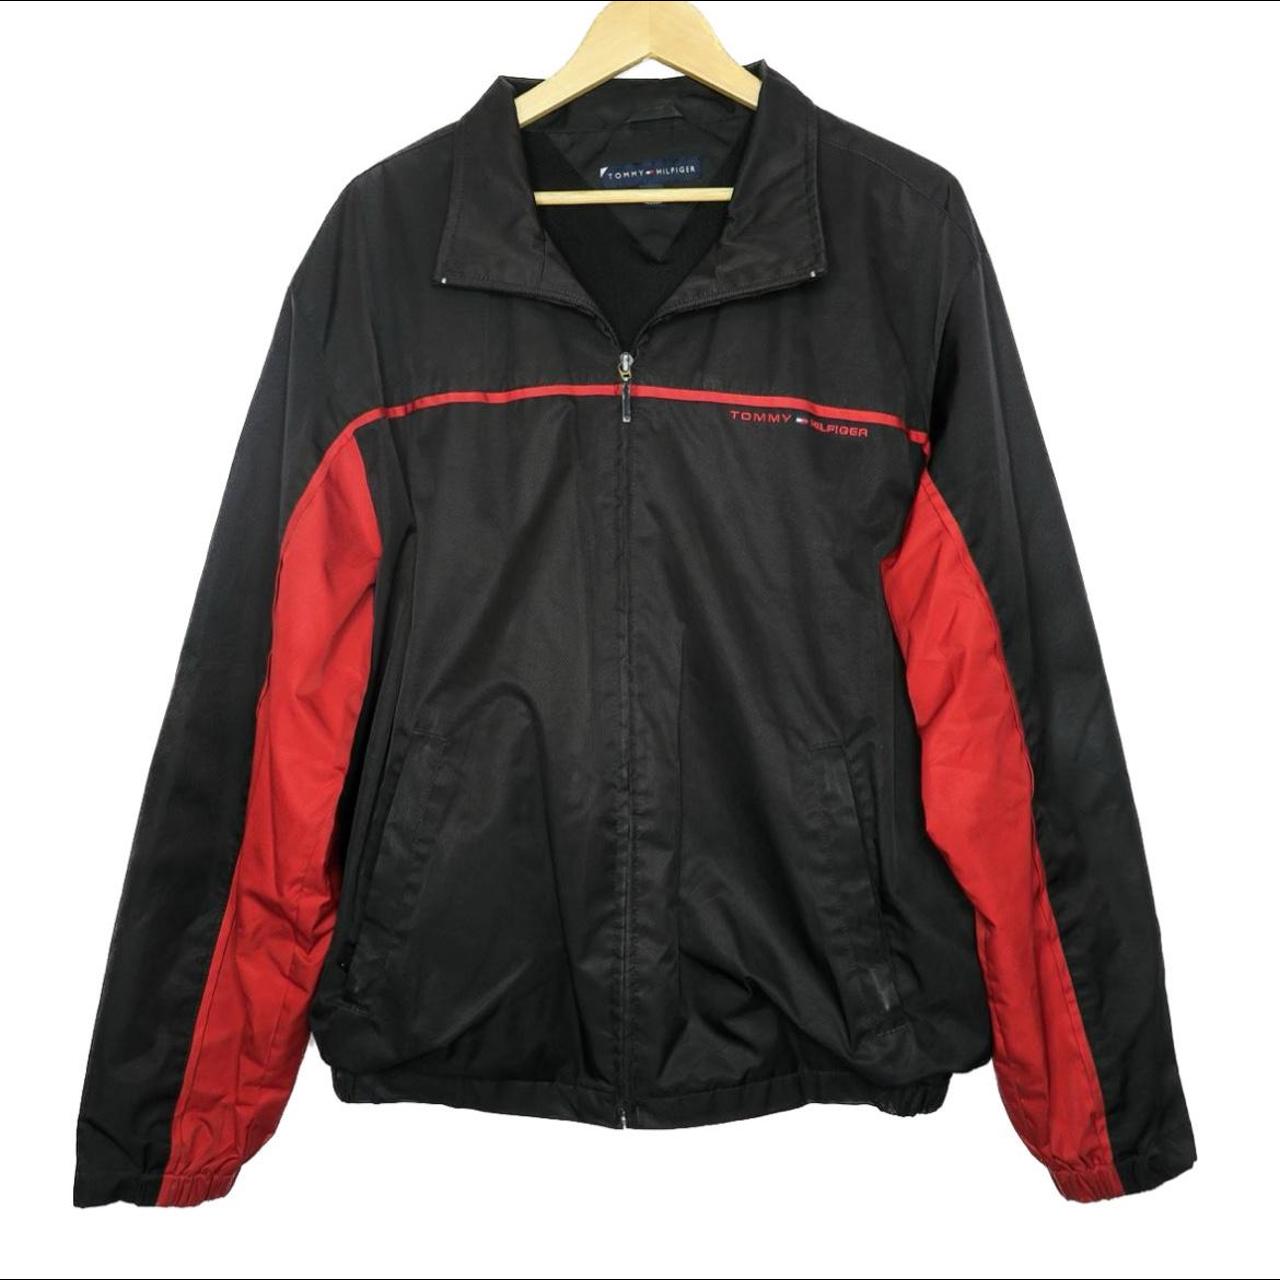 Tommy Hilfiger Men's Black and Red Jacket | Depop